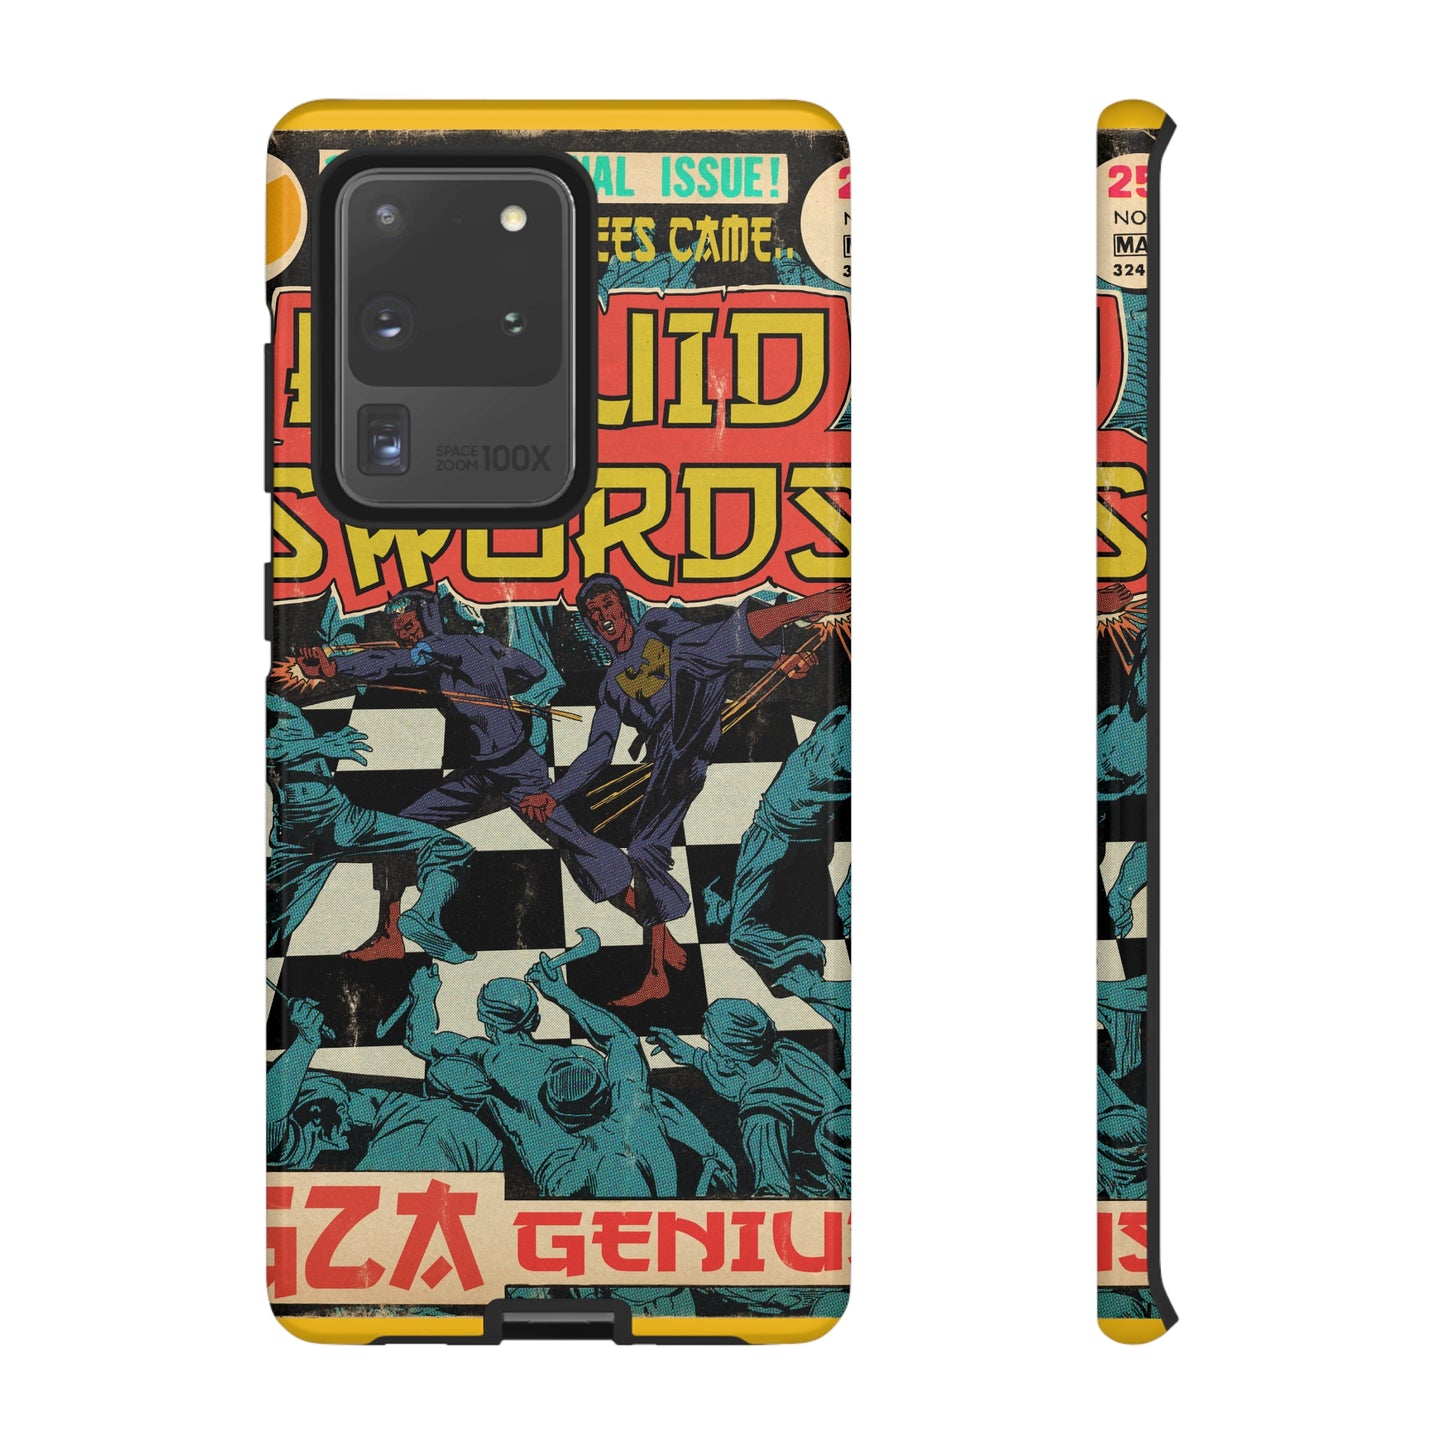 GZA/Genius - Liquid Swords - Tough Phone Cases